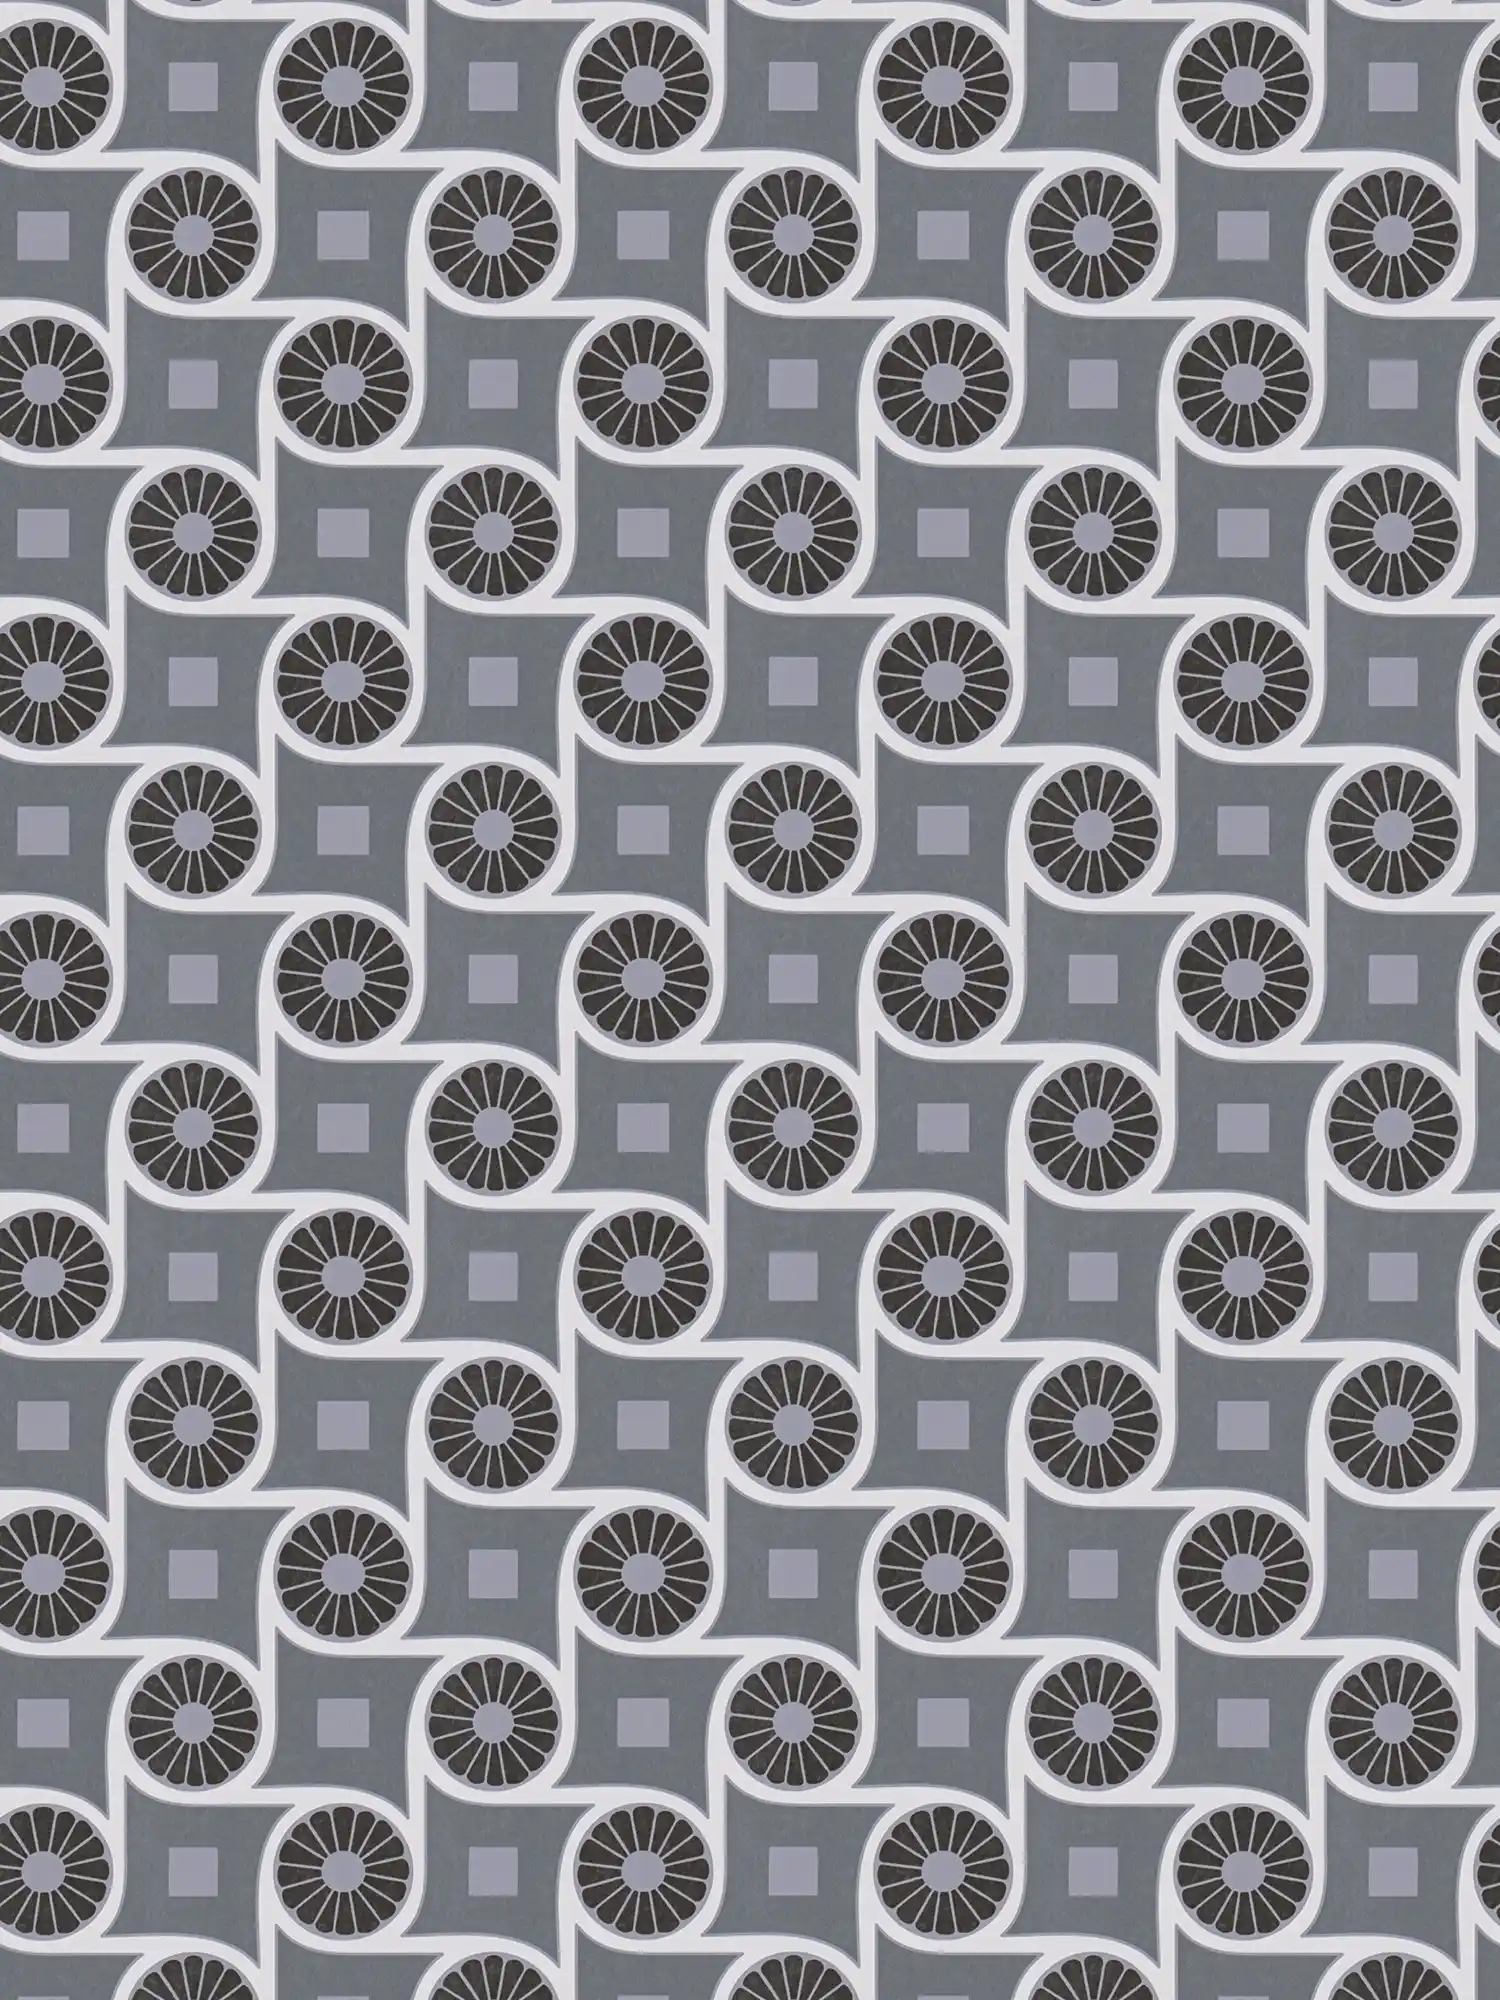 Retro stijl behang met cirkelpatroon en vierkantjes - grijs, wit, zwart
